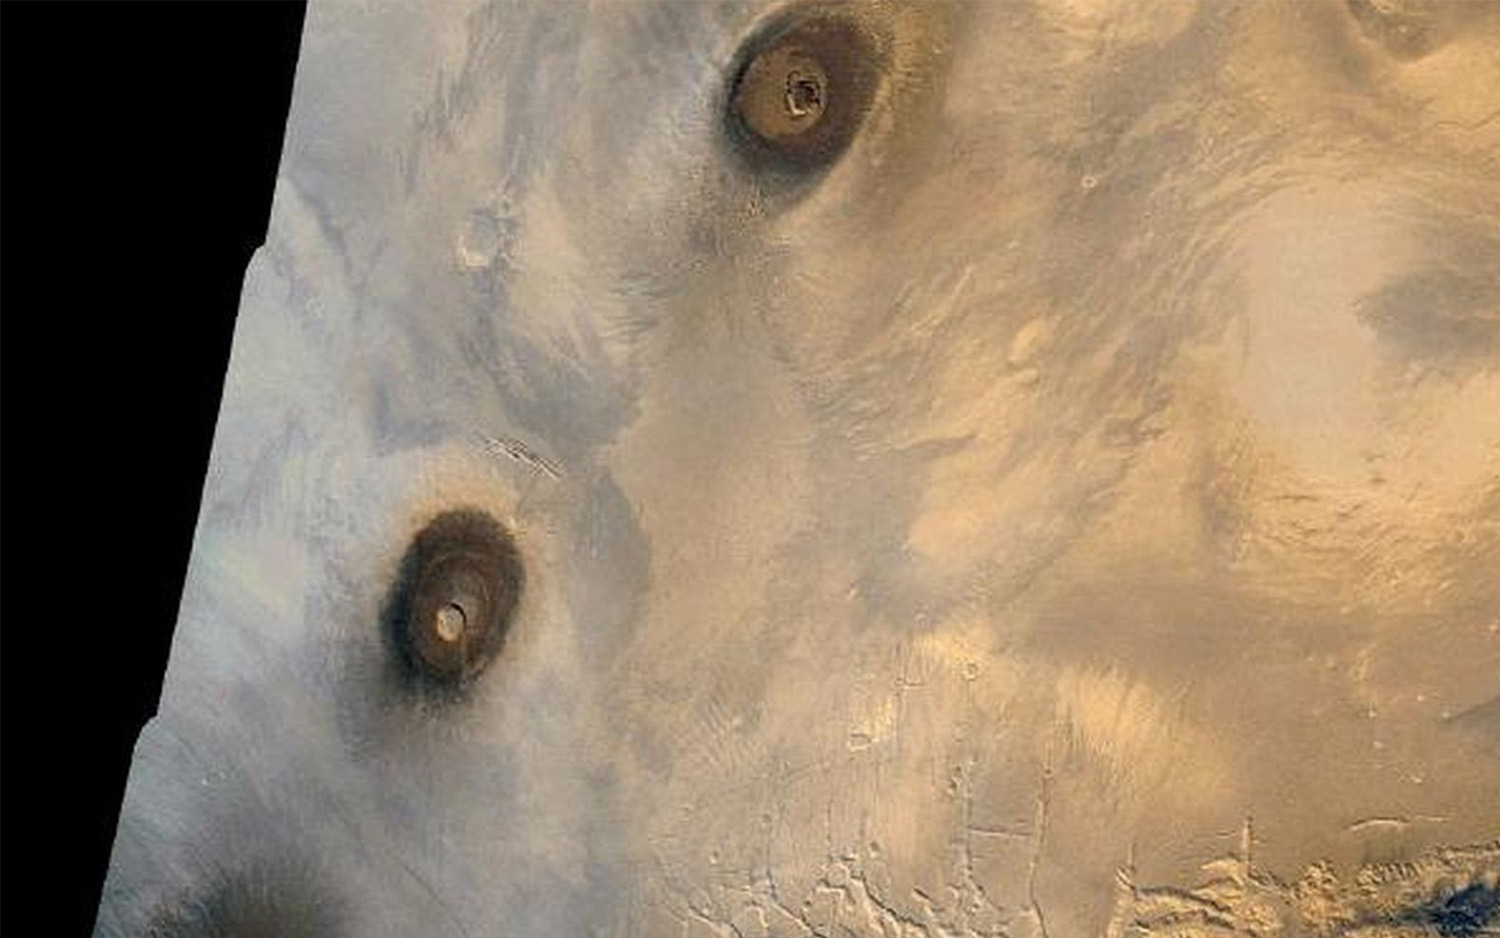 با ۸ جاذبه شگفت انگیز در مریخ آشنا شوید + جزئیات